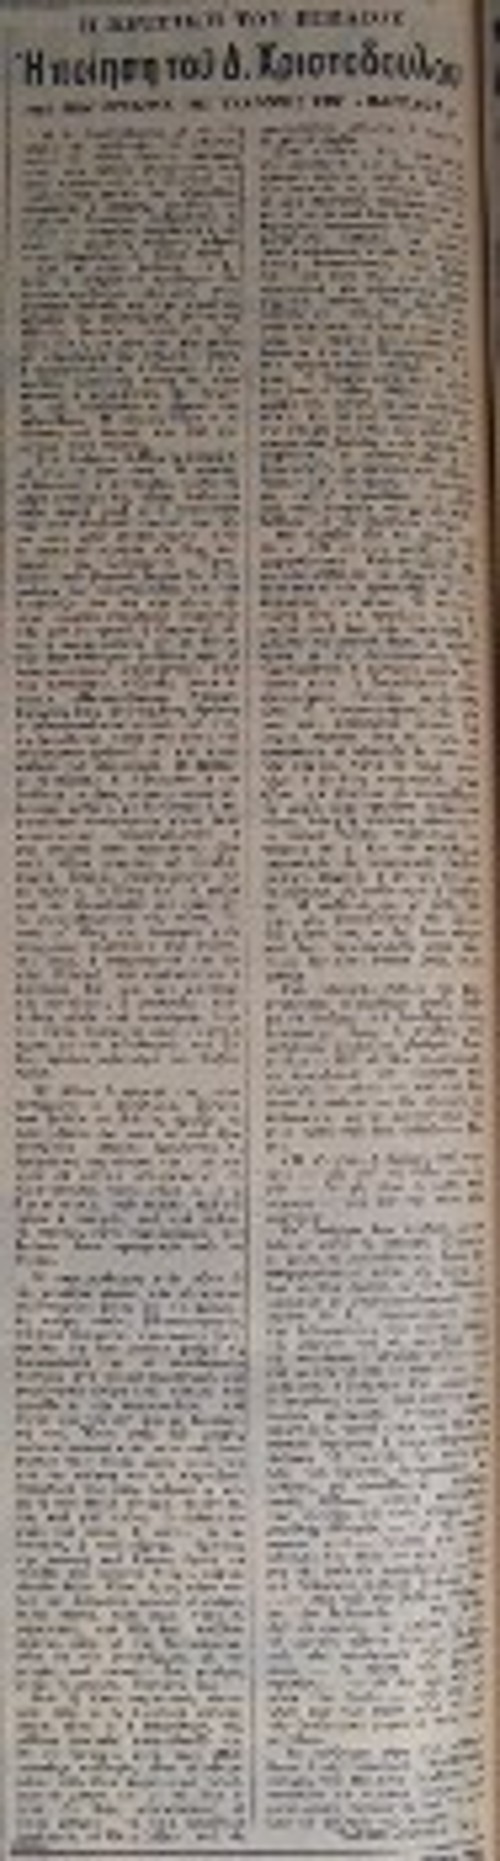 Ο Τάσος Λειβαδίτης, εξόριστος, το 1951, στον Αη - Στράτη και τα δύο αποκόμματα με τις κριτικές του στην προδικτατορική εφημερίδα «Η Αυγή» για τις συλλογές «Πάροδος» και «Πρόμαχοι»